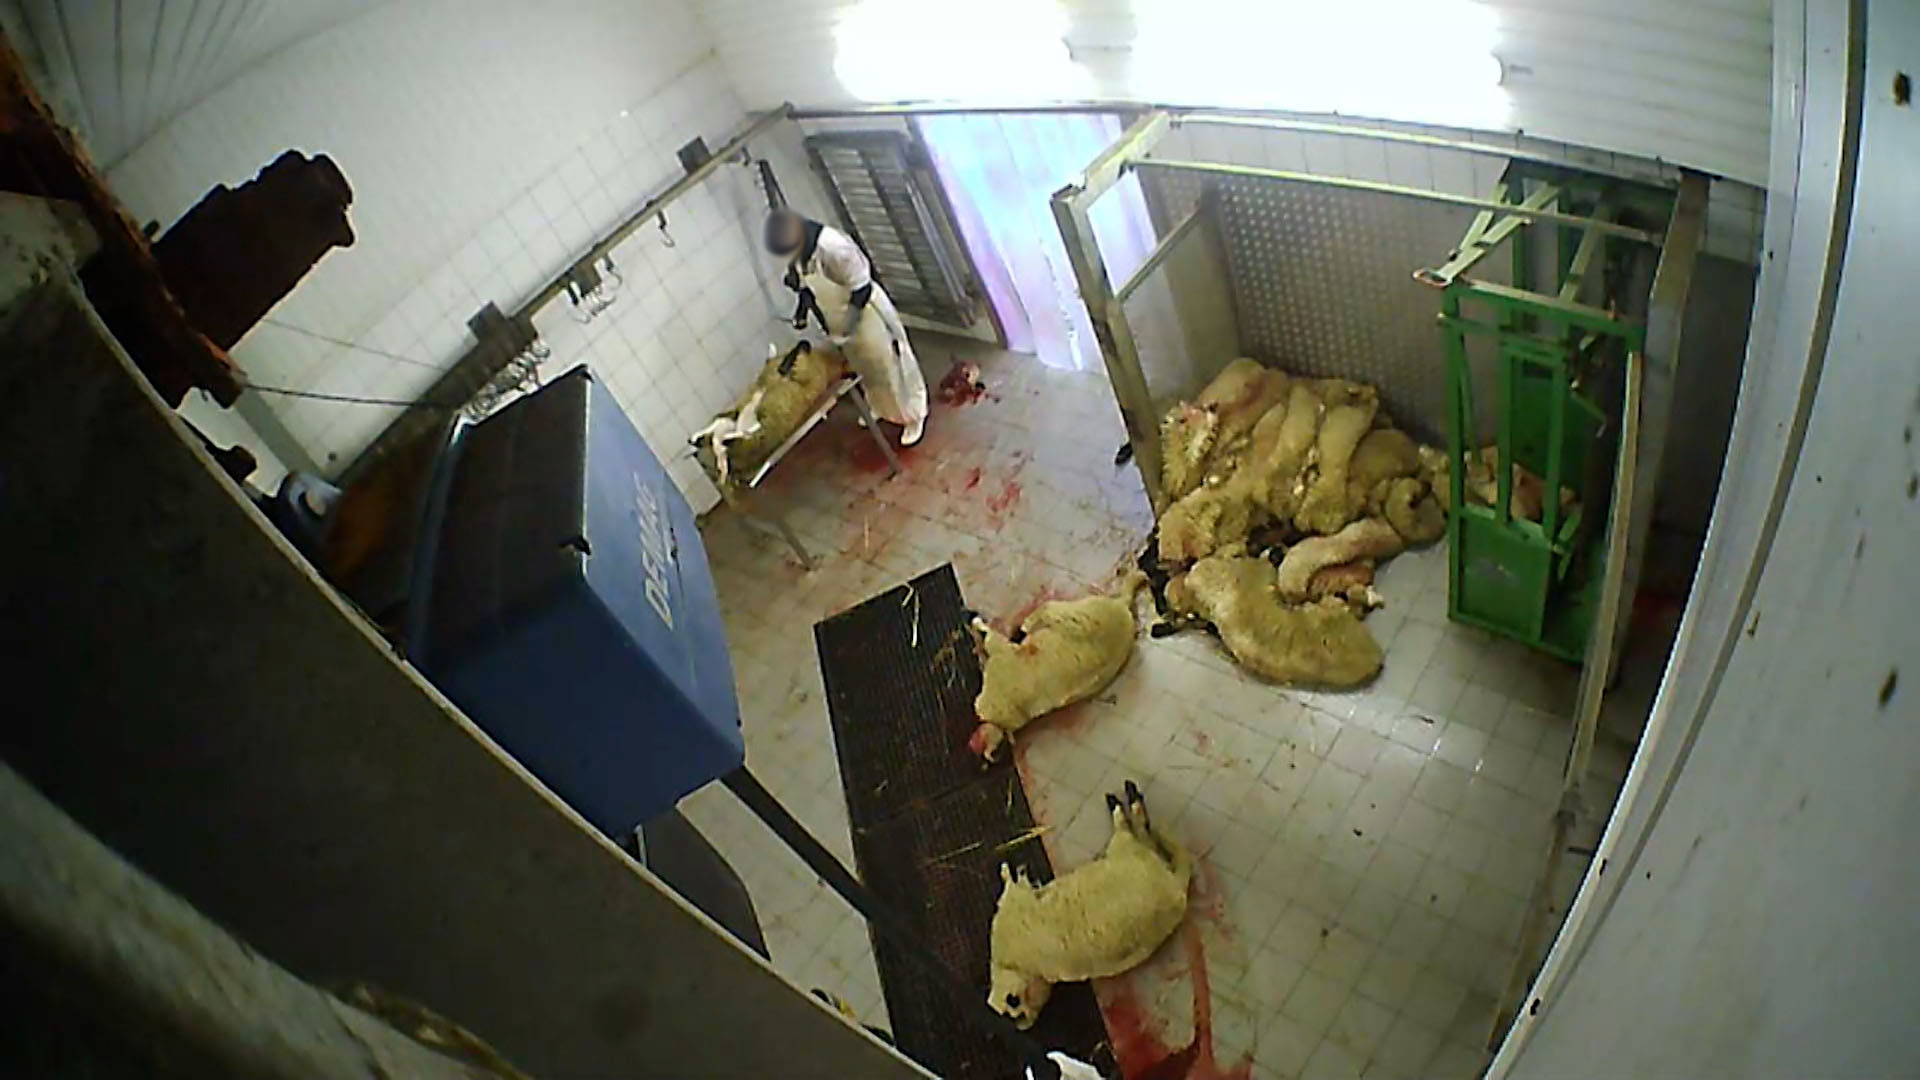 Geschächtete Tiere liegen auf dem Fußboden. | Deutsches Tierschutzbüro